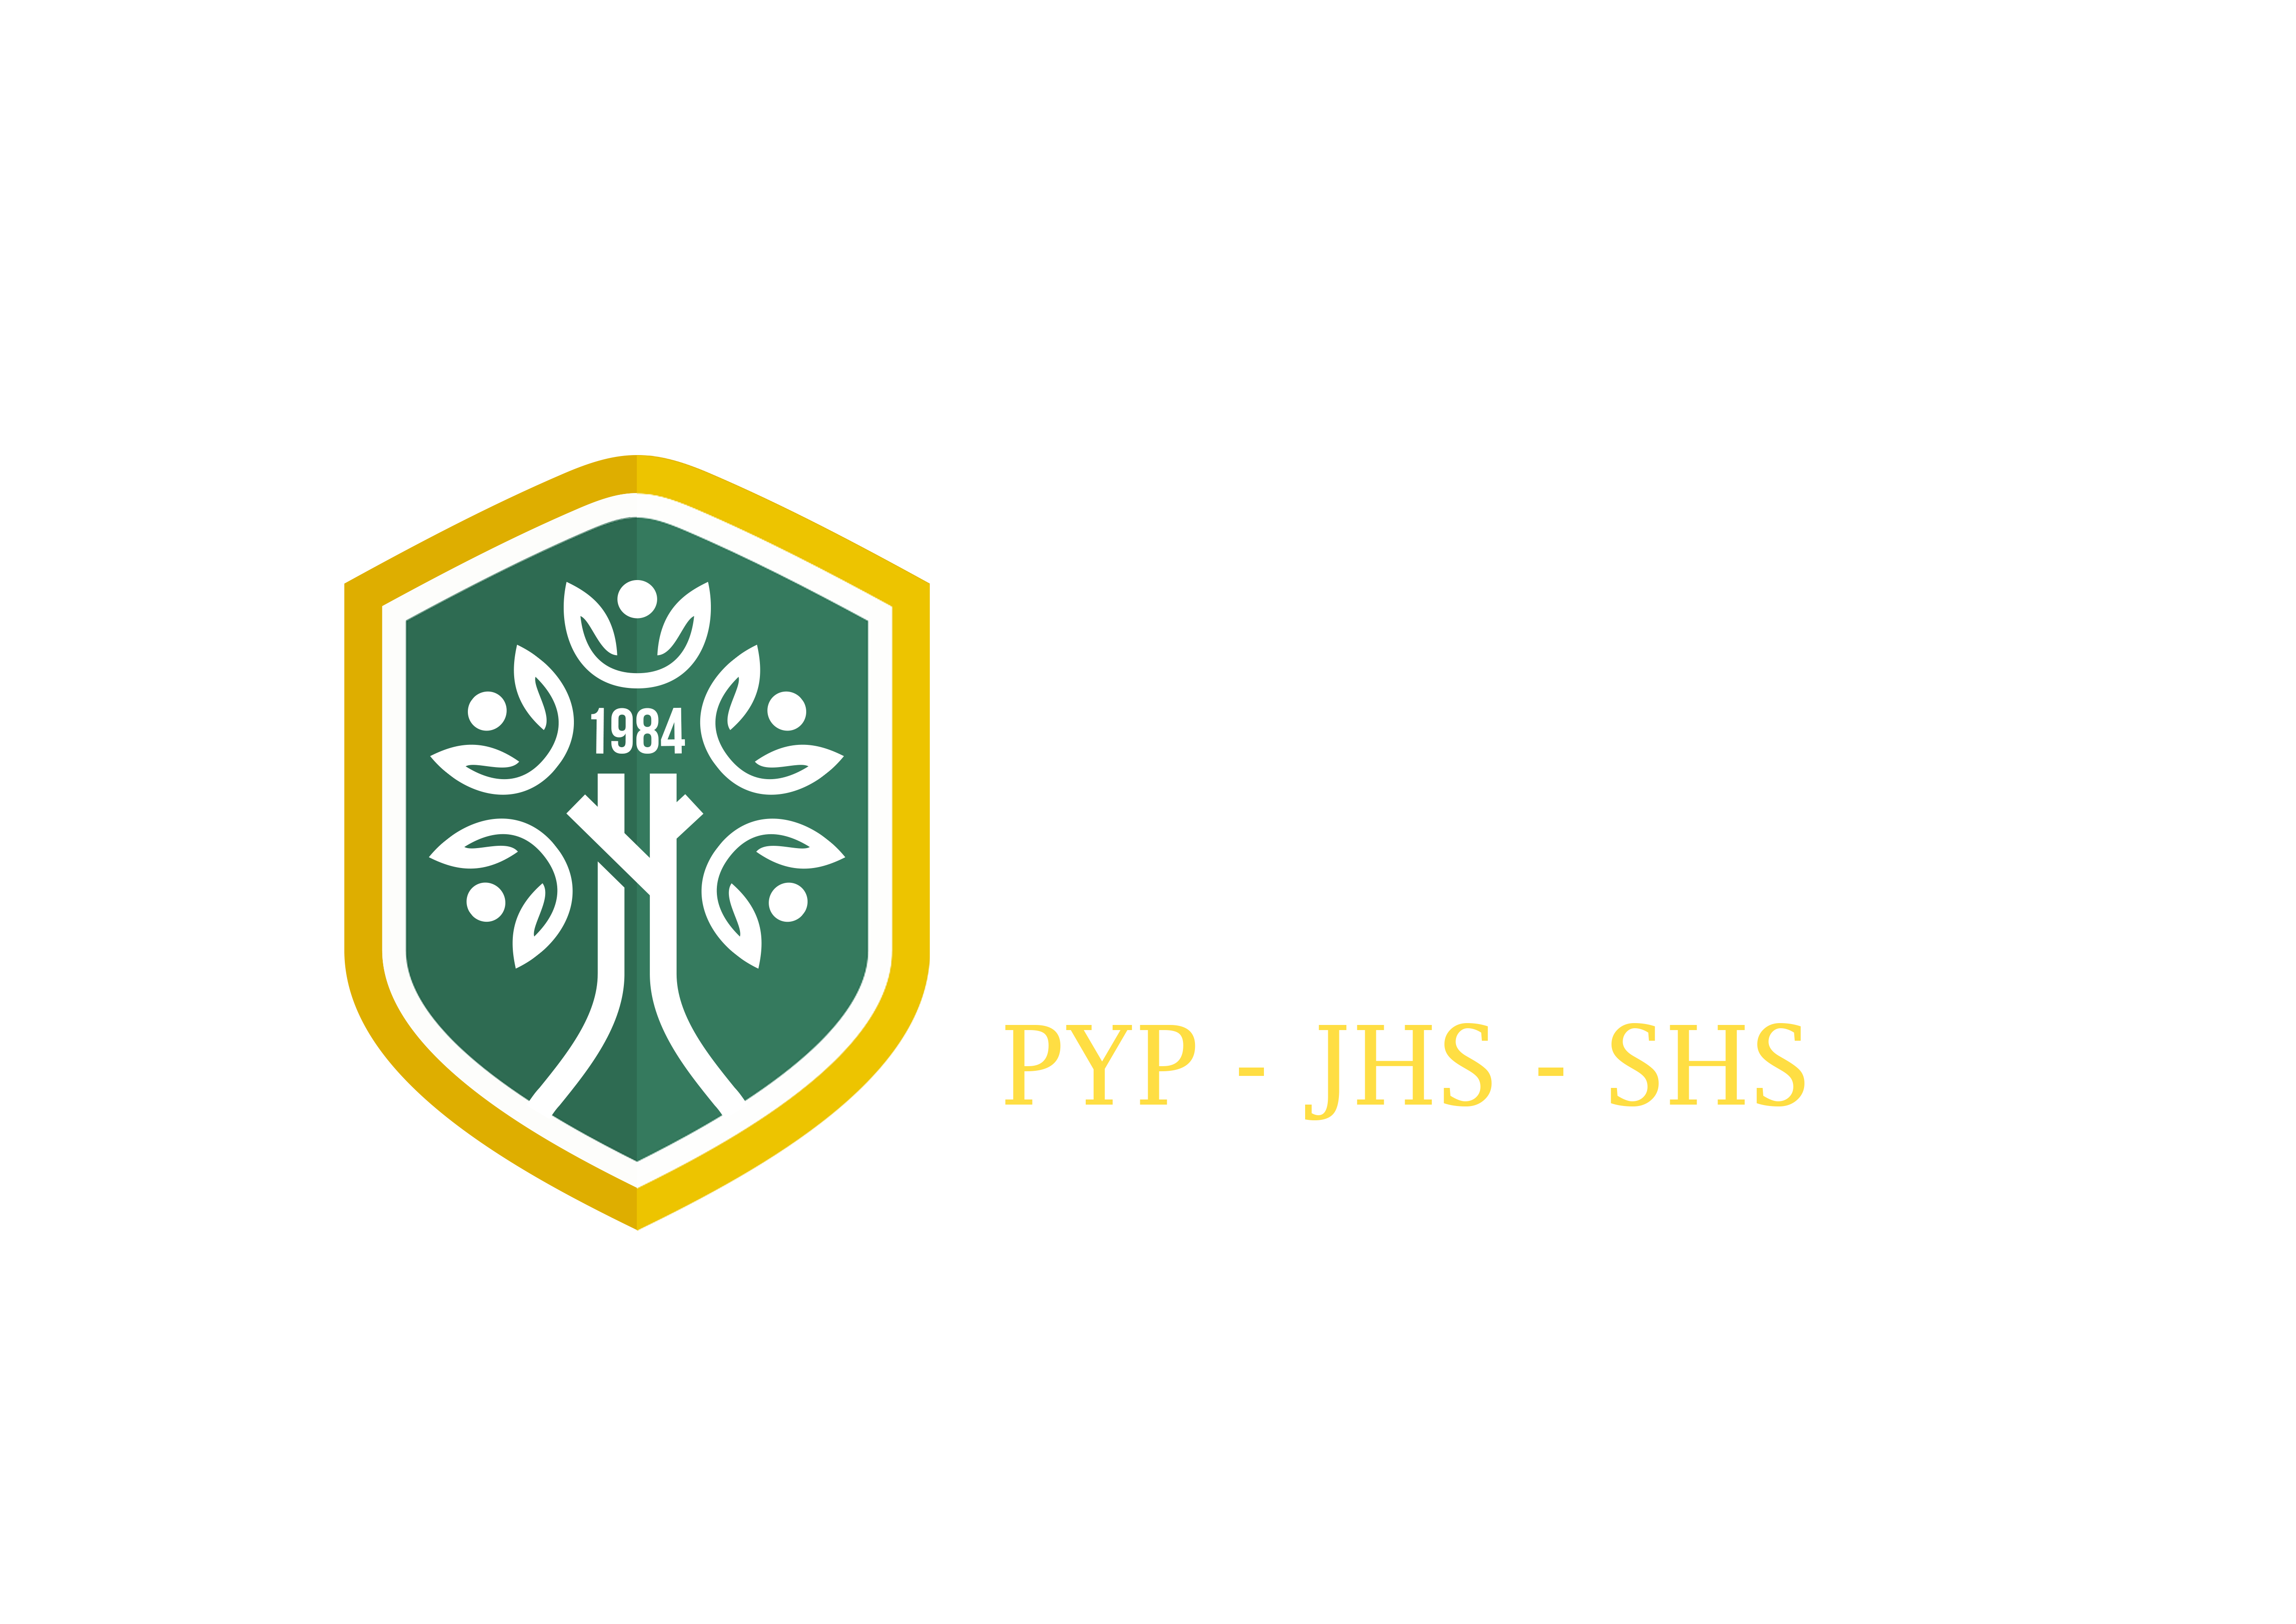 Nassa School